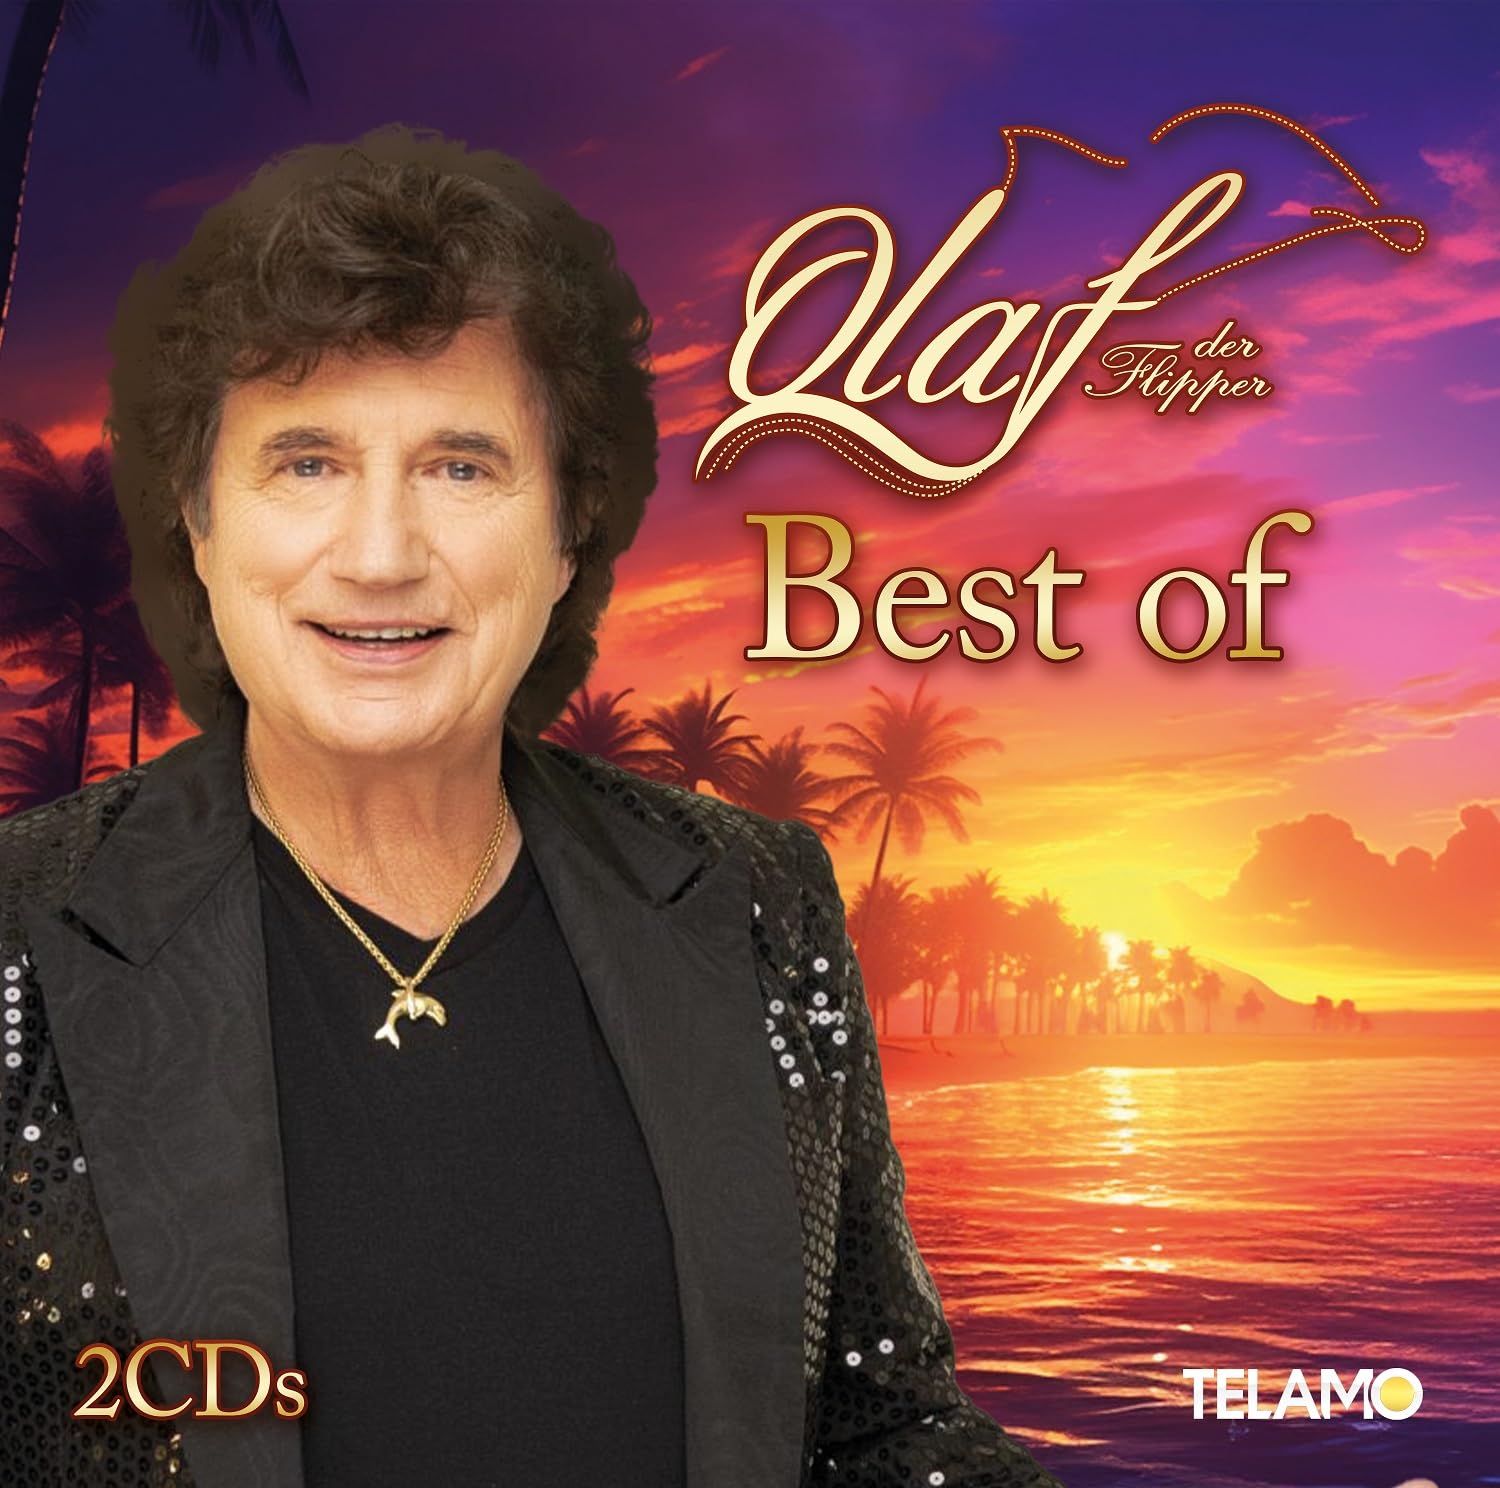 OLAF DER FLIPPER * Best Of (Doppel-CD)